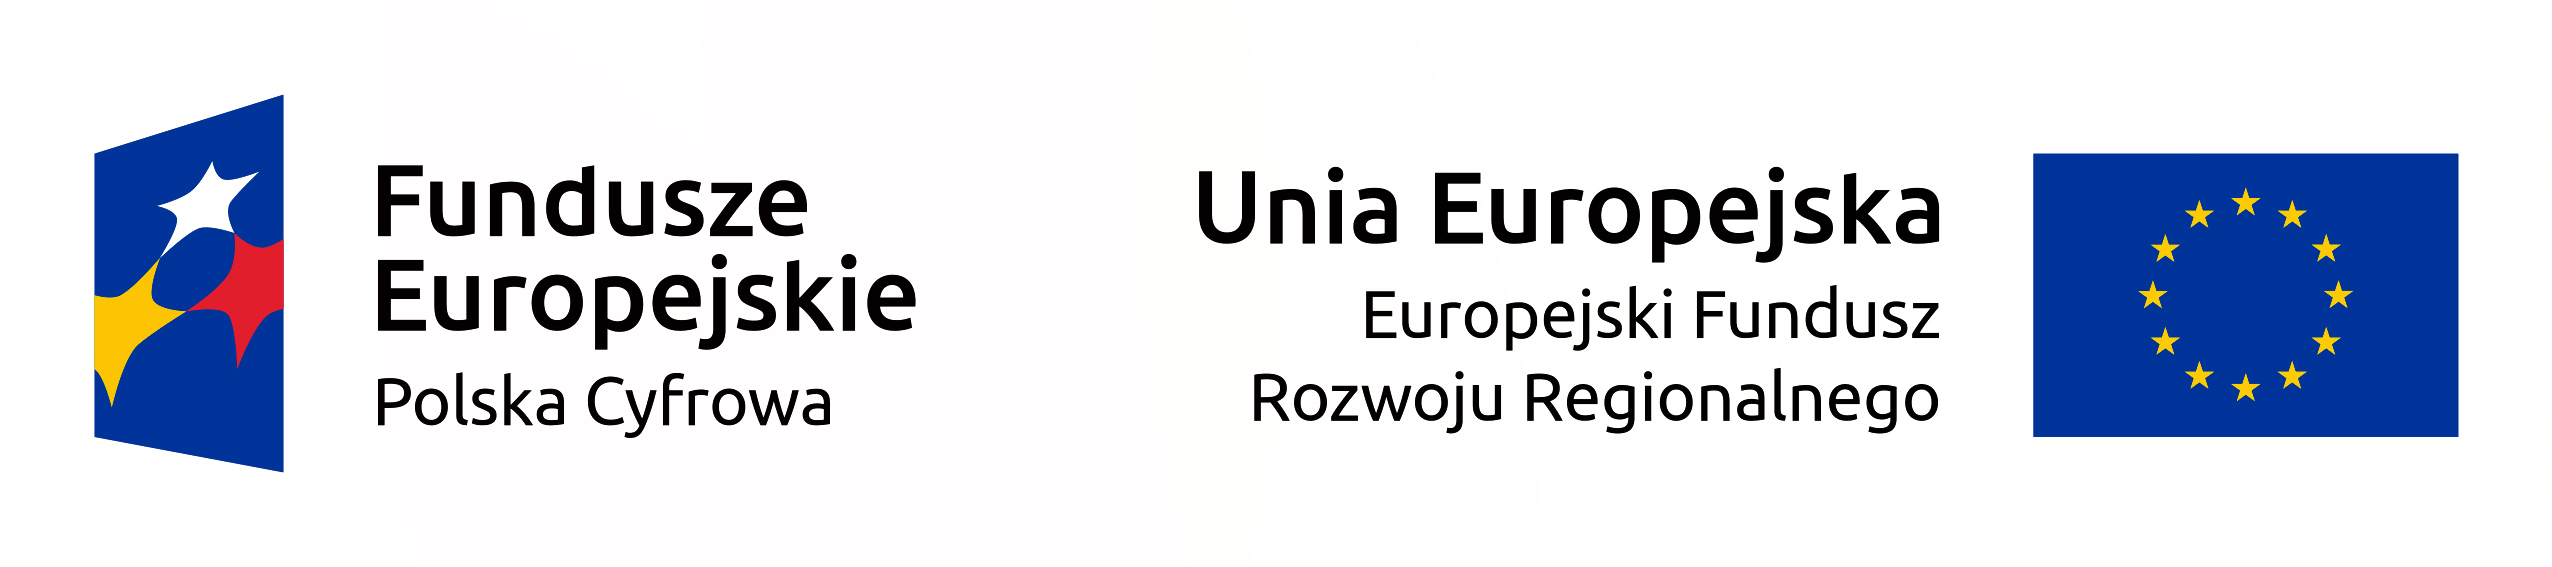 Fundusze Europejskie Polska Cyfrowa. Unia Europejska Europejski Fundusz Rozwoju Regionalnego